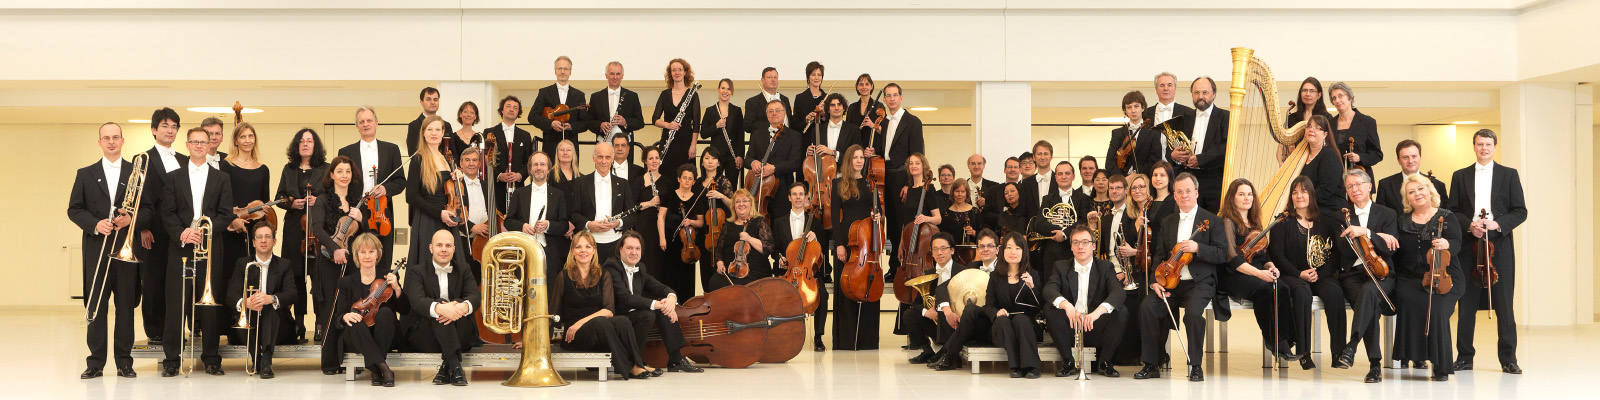 Gruppenfoto des Staatsorchesters Rheinische Philharmonie 